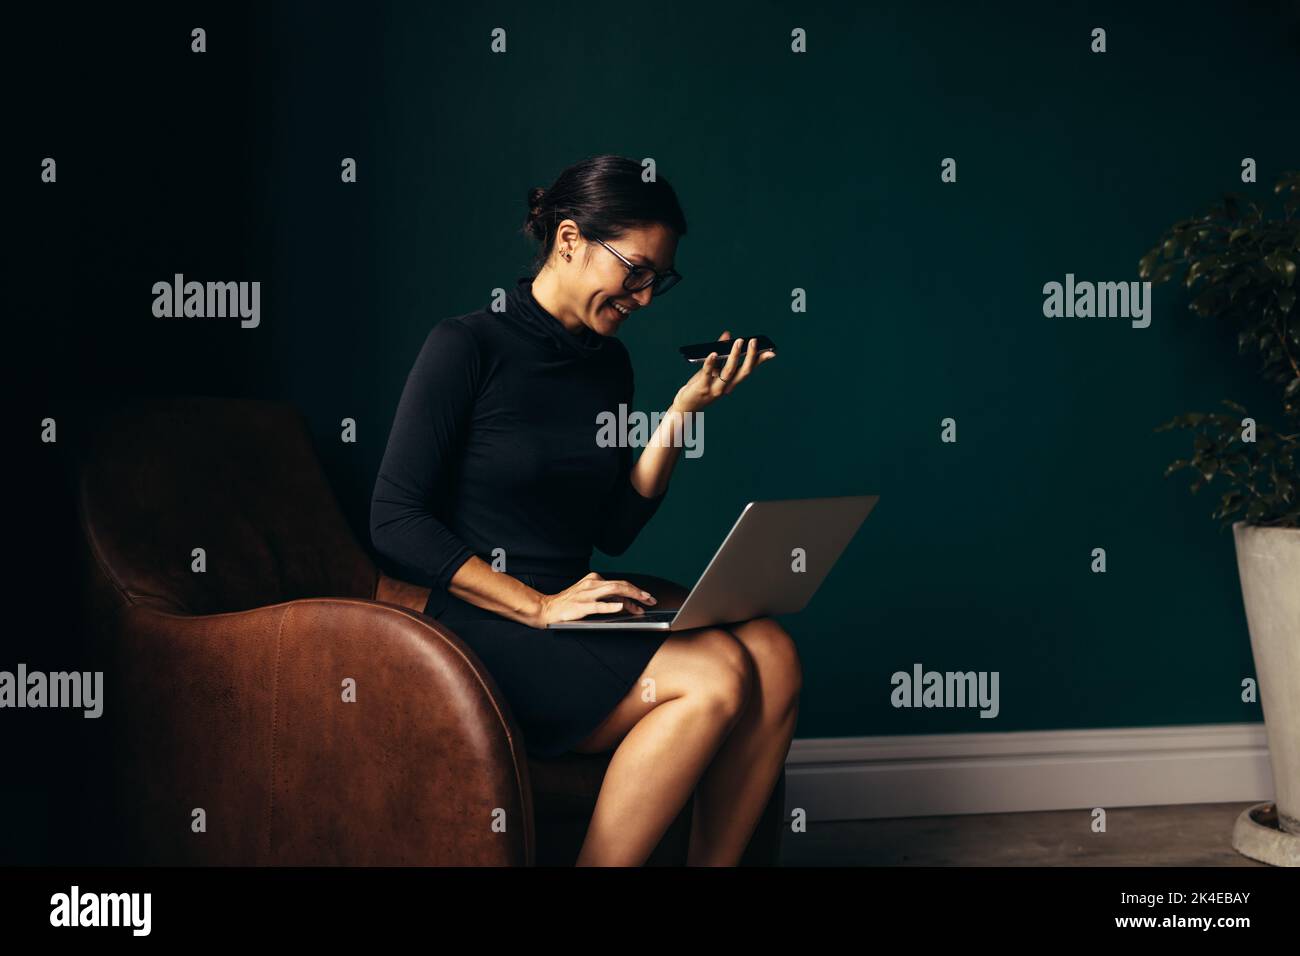 Bonne femme asiatique répondant à un appel téléphonique et travaillant sur un ordinateur portable. Jeune femme assise sur un fauteuil à l'aide d'un ordinateur portable et d'un téléphone portable. Banque D'Images